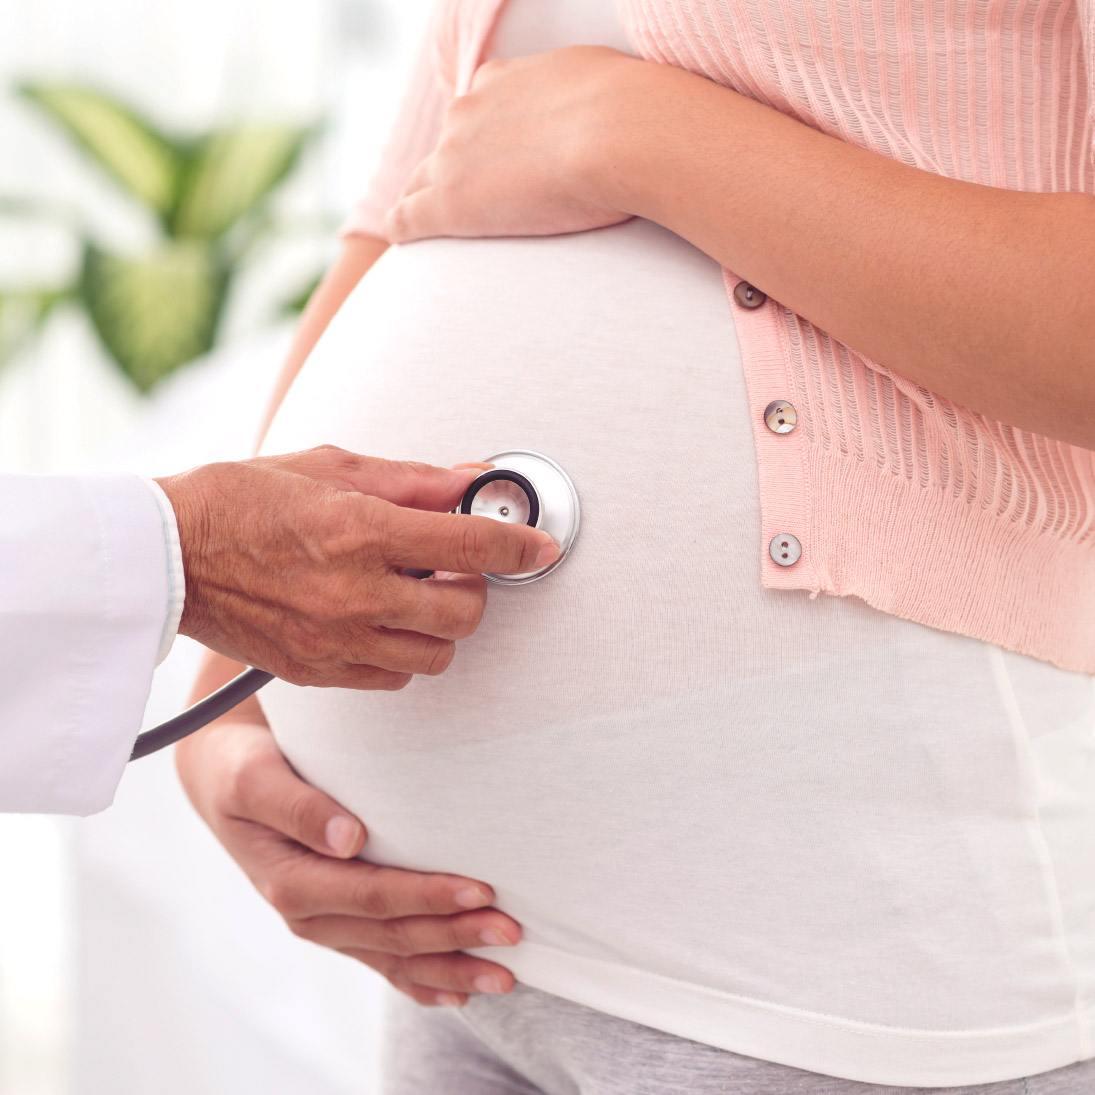 Hosta under graviditeten är inte farligt, men det måste behandlas annorlunda